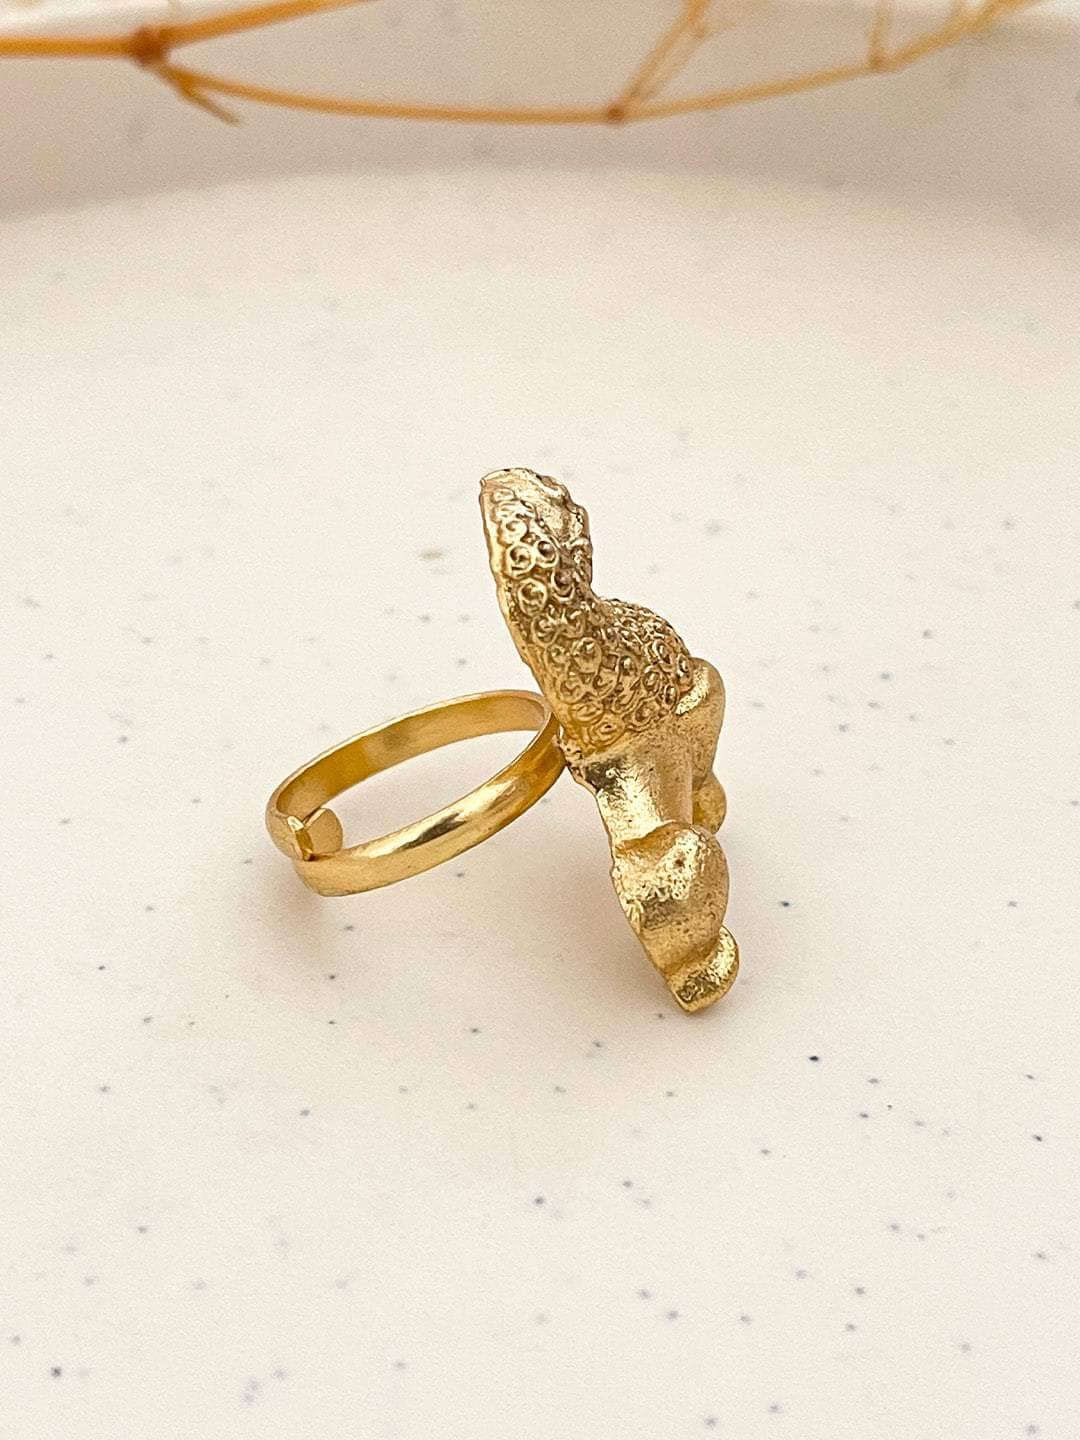 Ishhaara Antique Golden Lion Ring